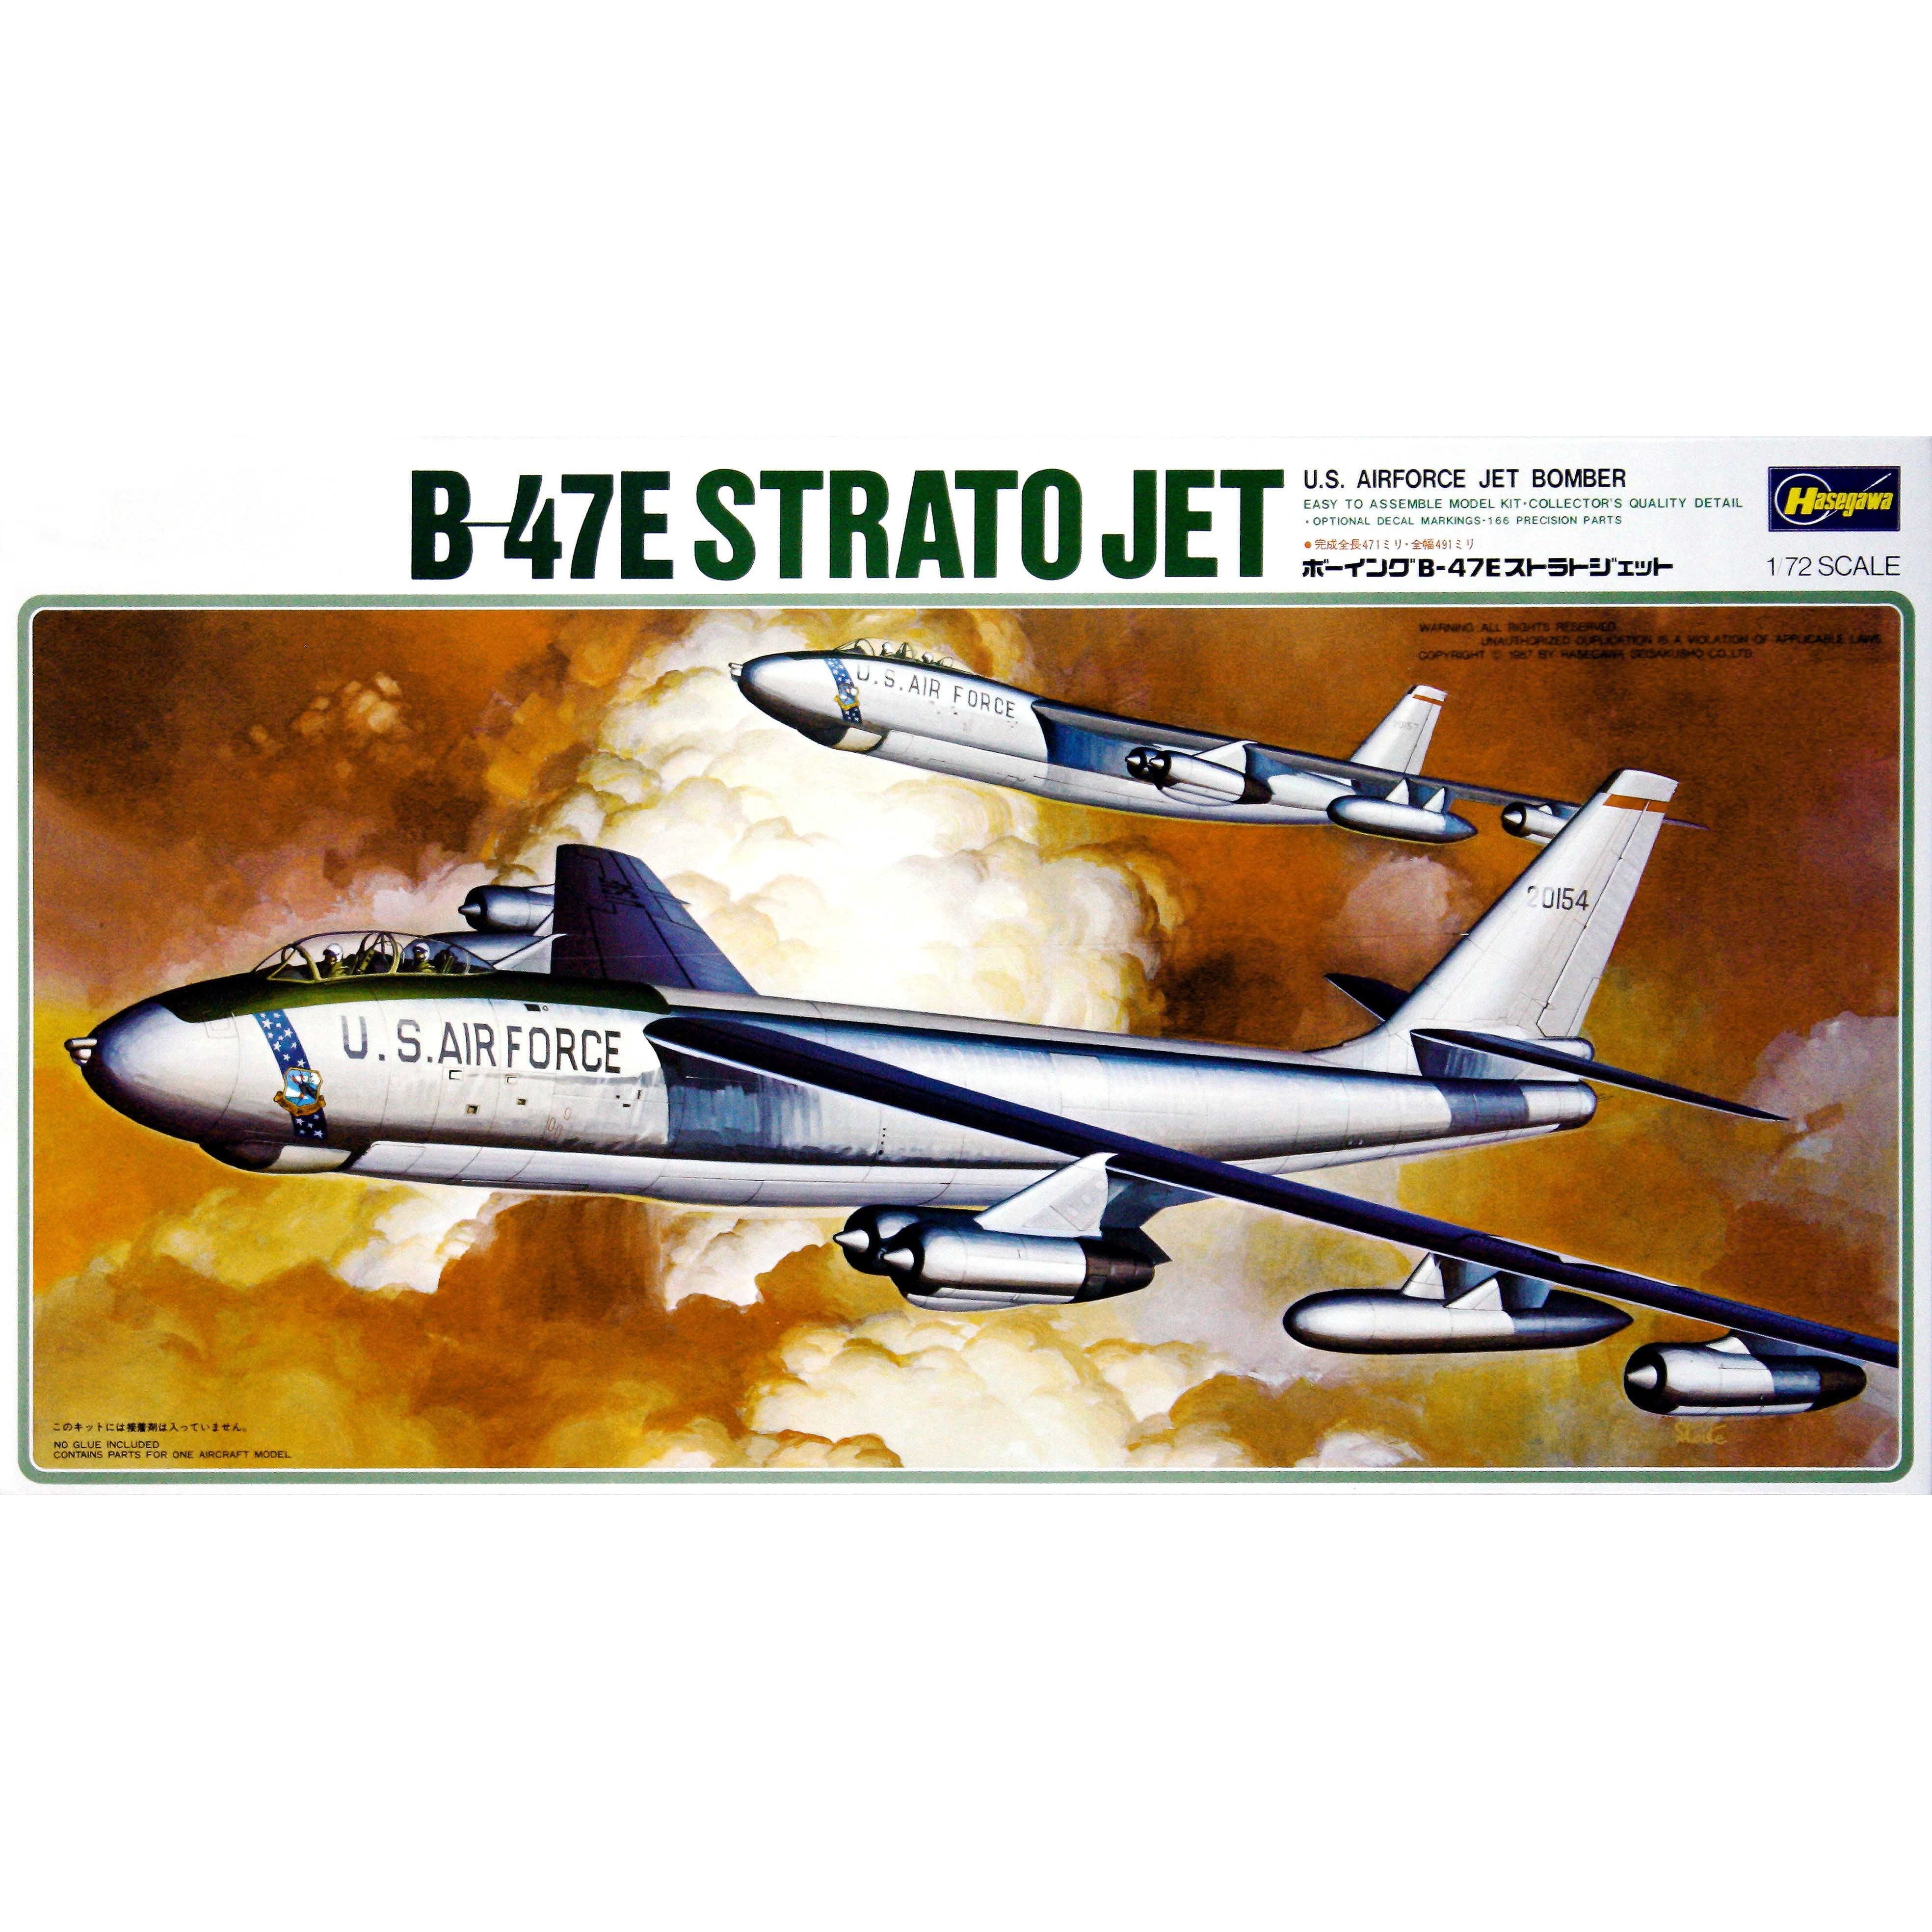 B-47E Stratojet 1/72 by Miniart